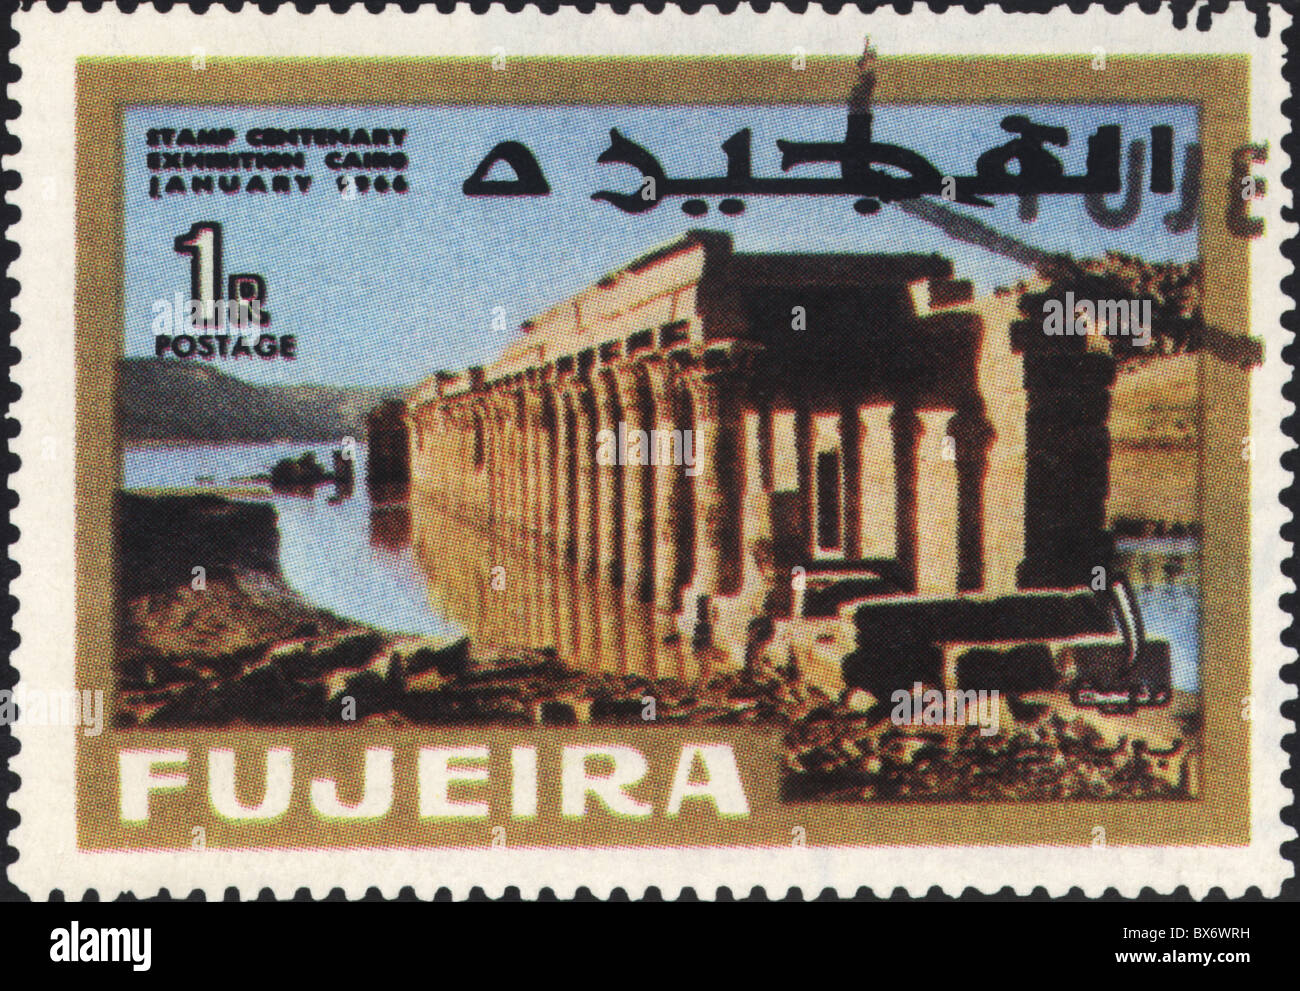 Mail / post, timbres-poste, Émirats arabes Unis, Fujairah, 1 timbre Dirham, janvier 1966, droits supplémentaires-Clearences-non disponible Banque D'Images